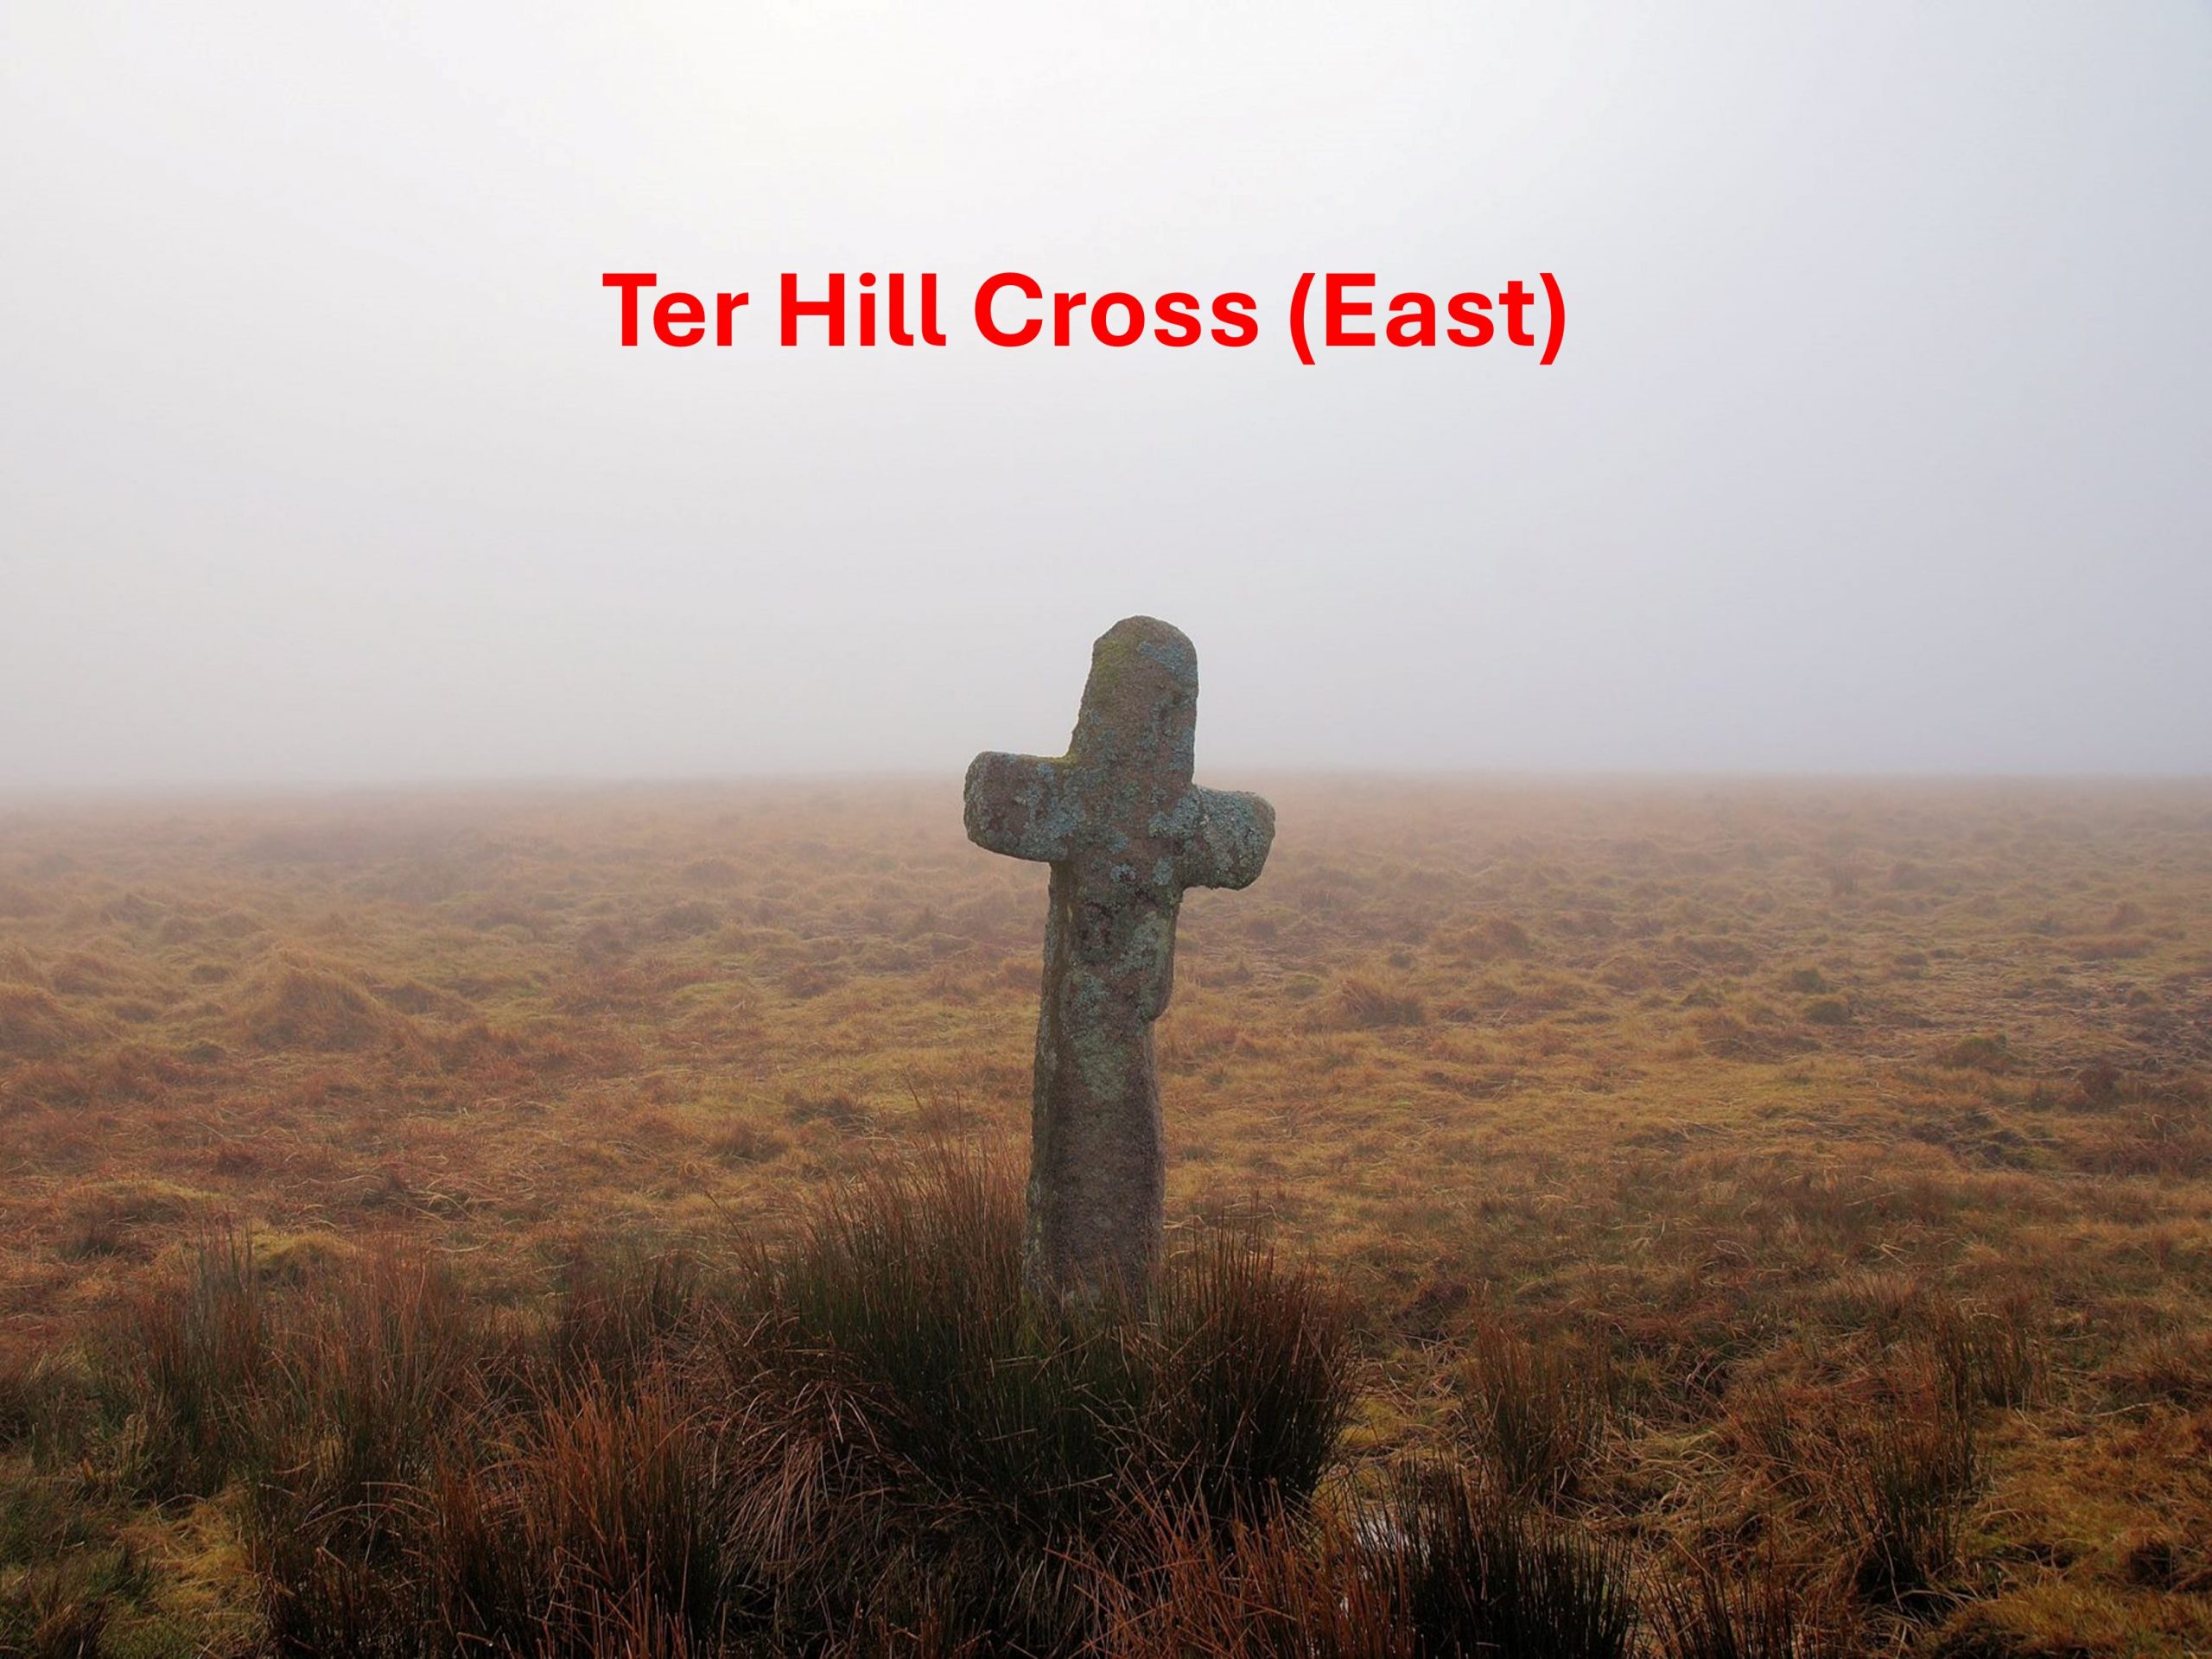 5. Ter Hill Cross East